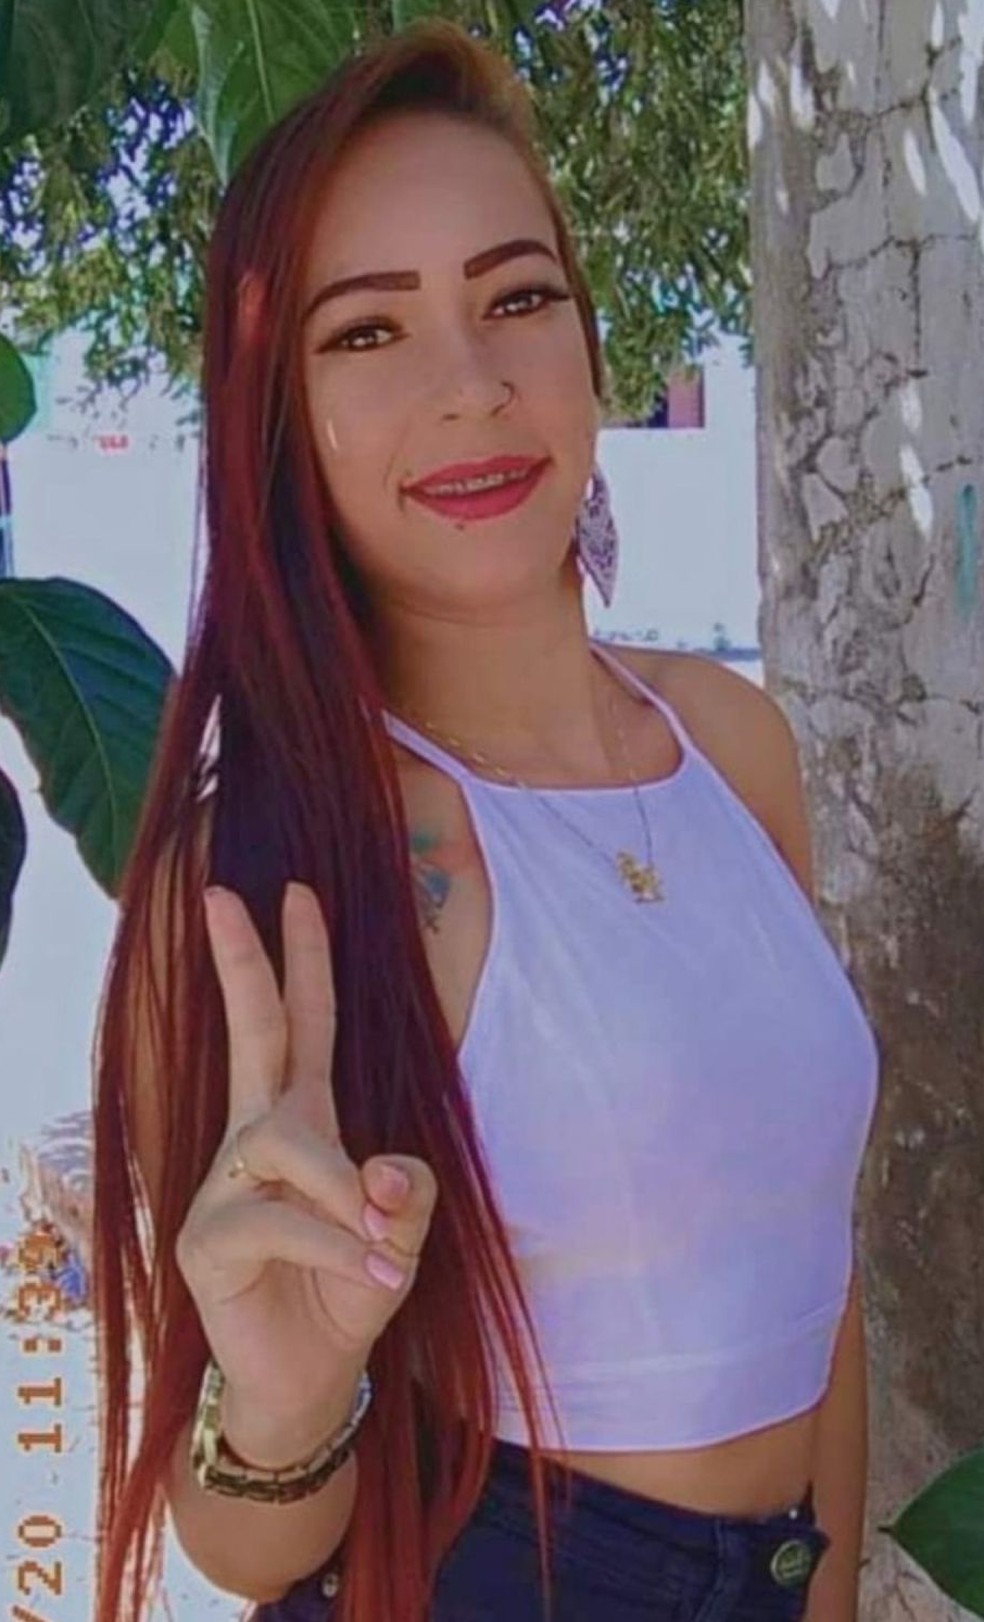 Jovem foi identificada como Luana Santana Ferreira de Mellos, de 26 anos — Foto: Reprodução